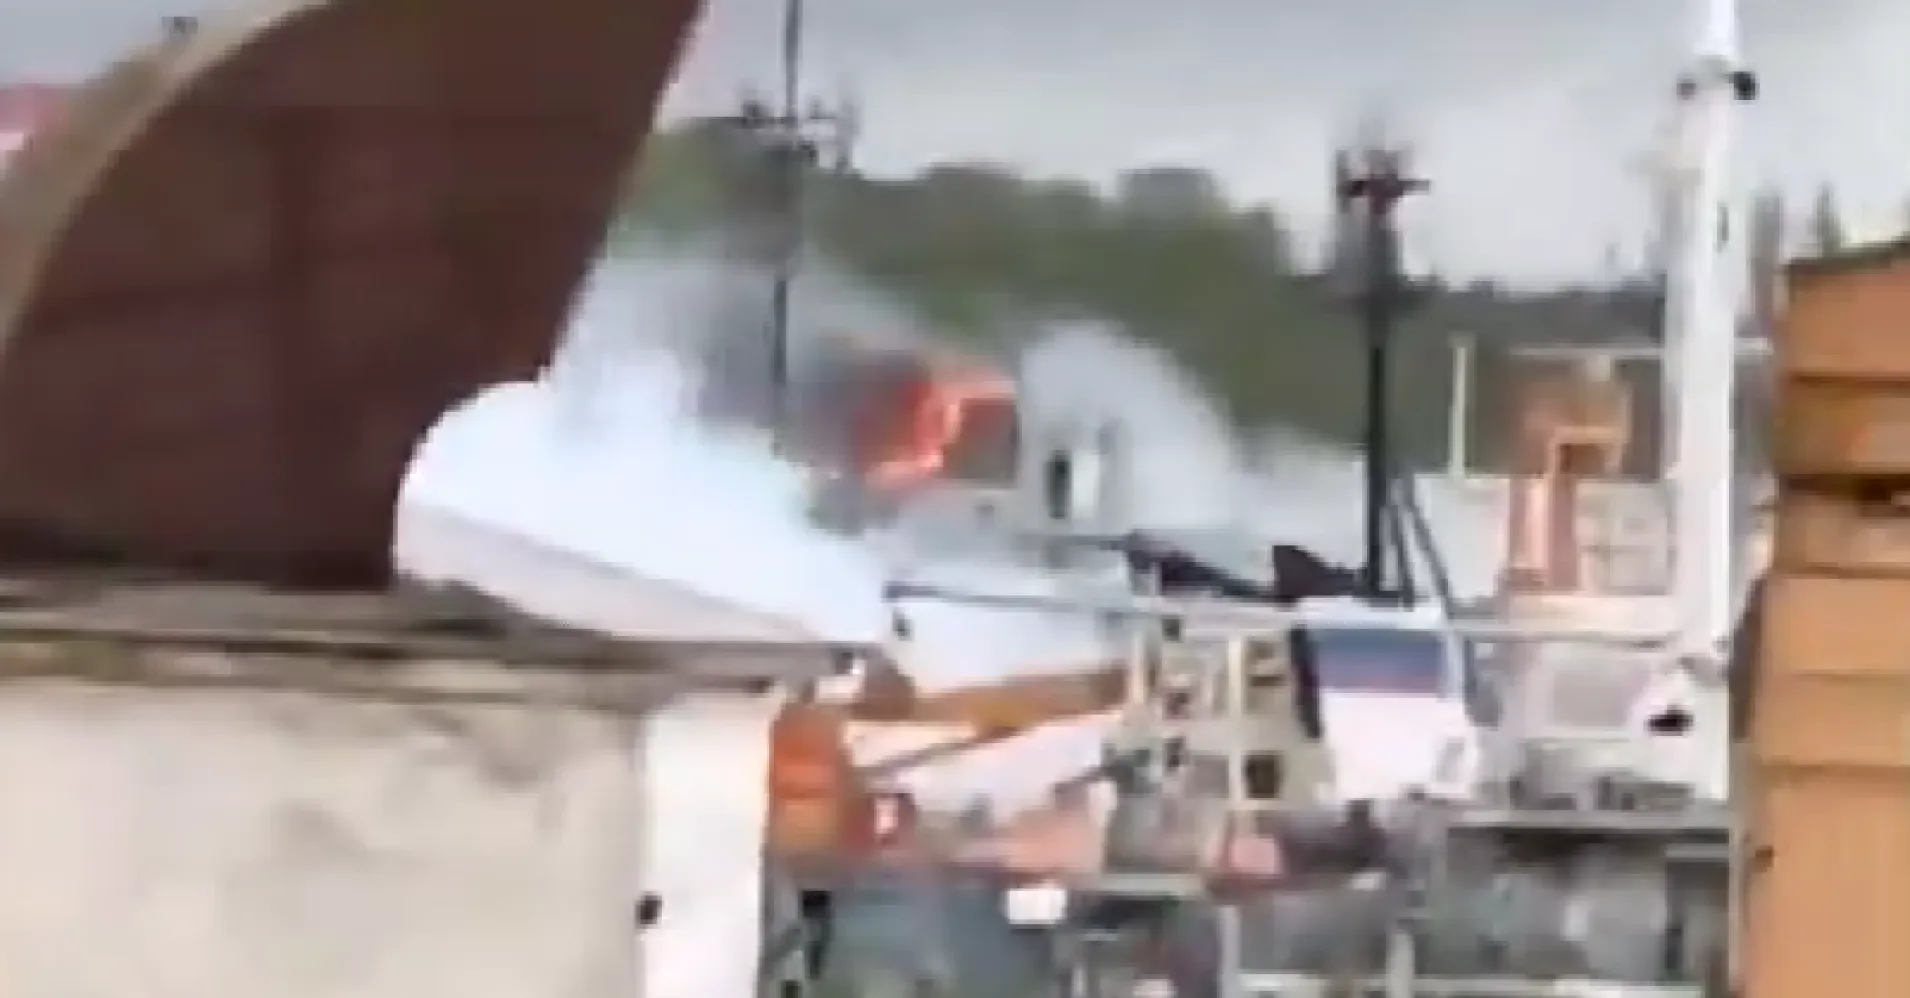 Ukrajina zaútočila na Krymu na ruskou loď. V Sevastopolu bylo slyšet exploze